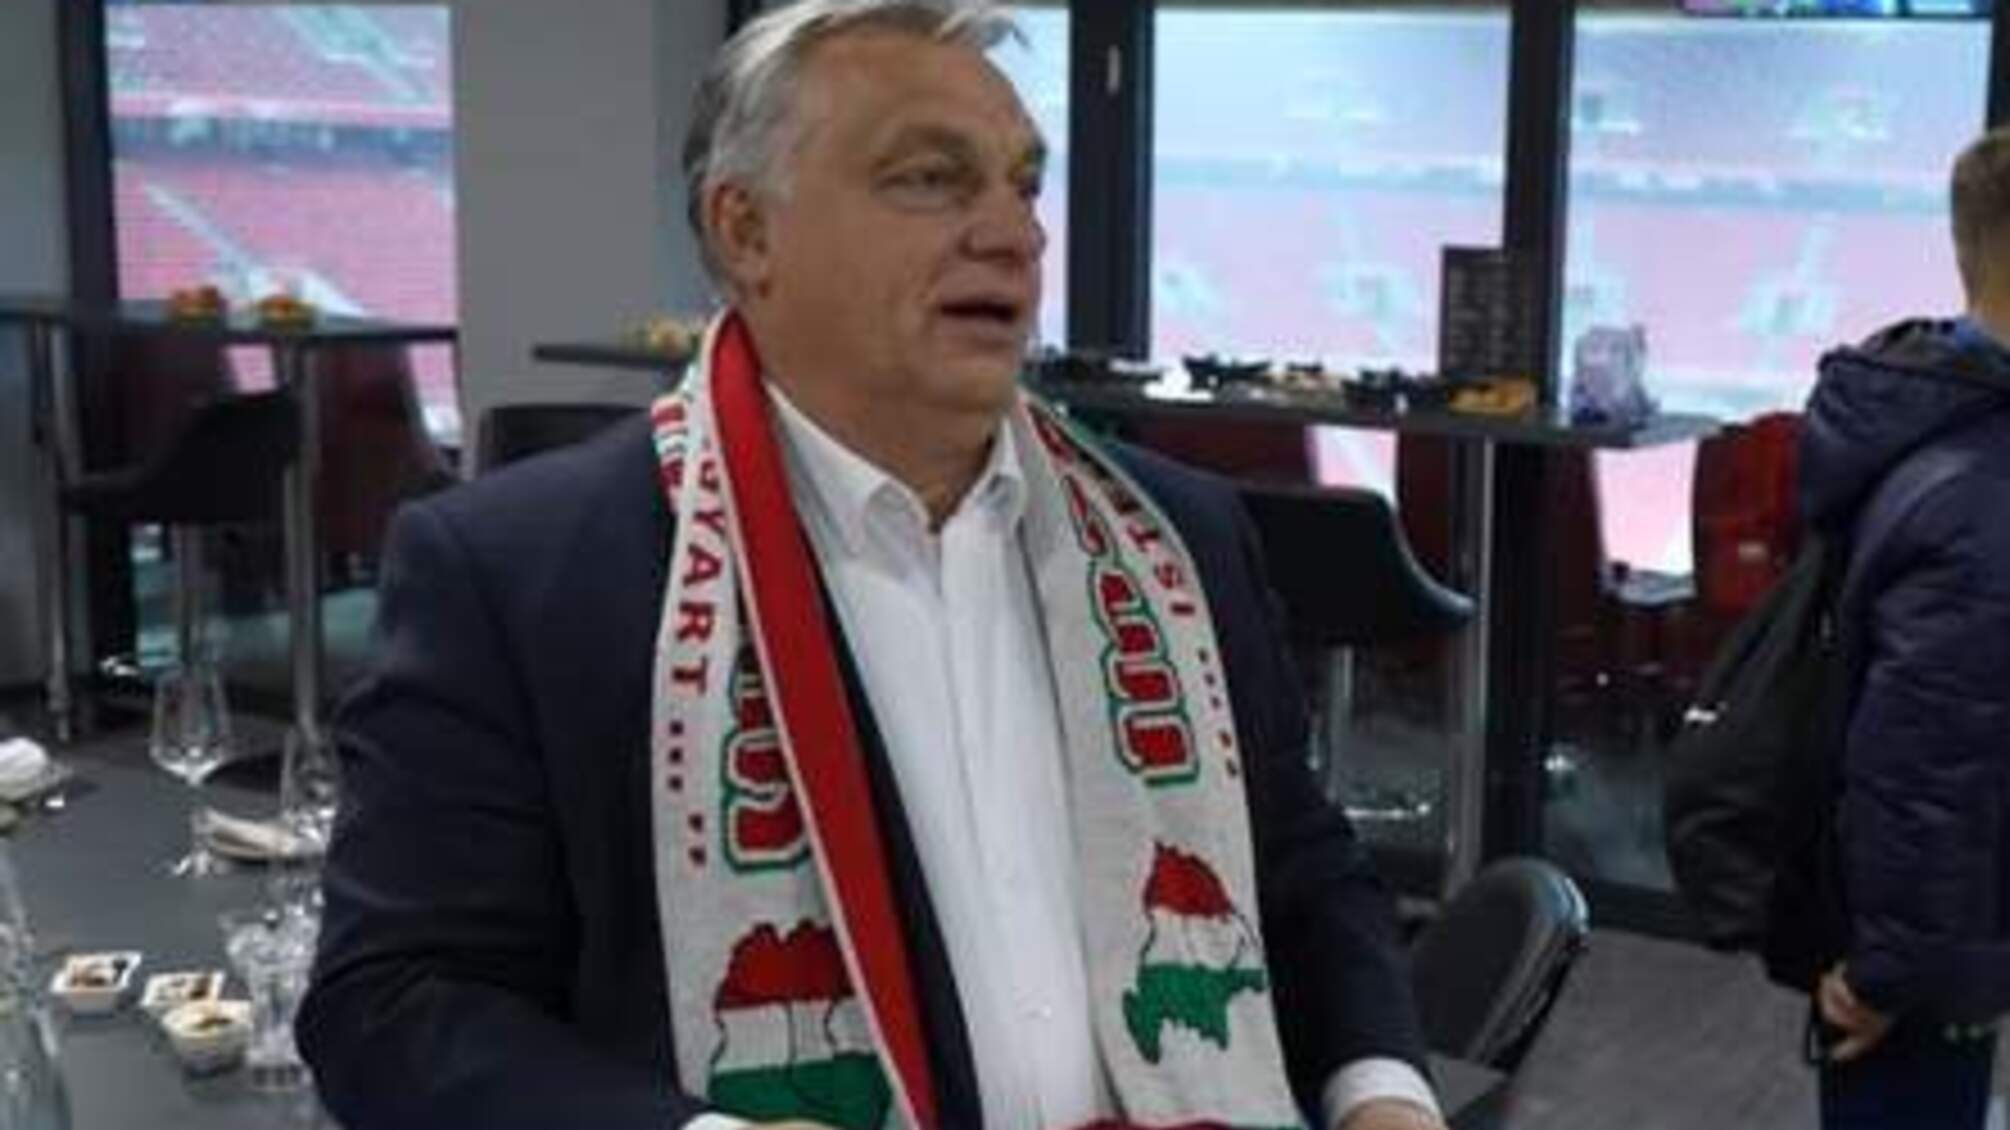 Віктор Орбан із шарфом 'Великої Угорщини'